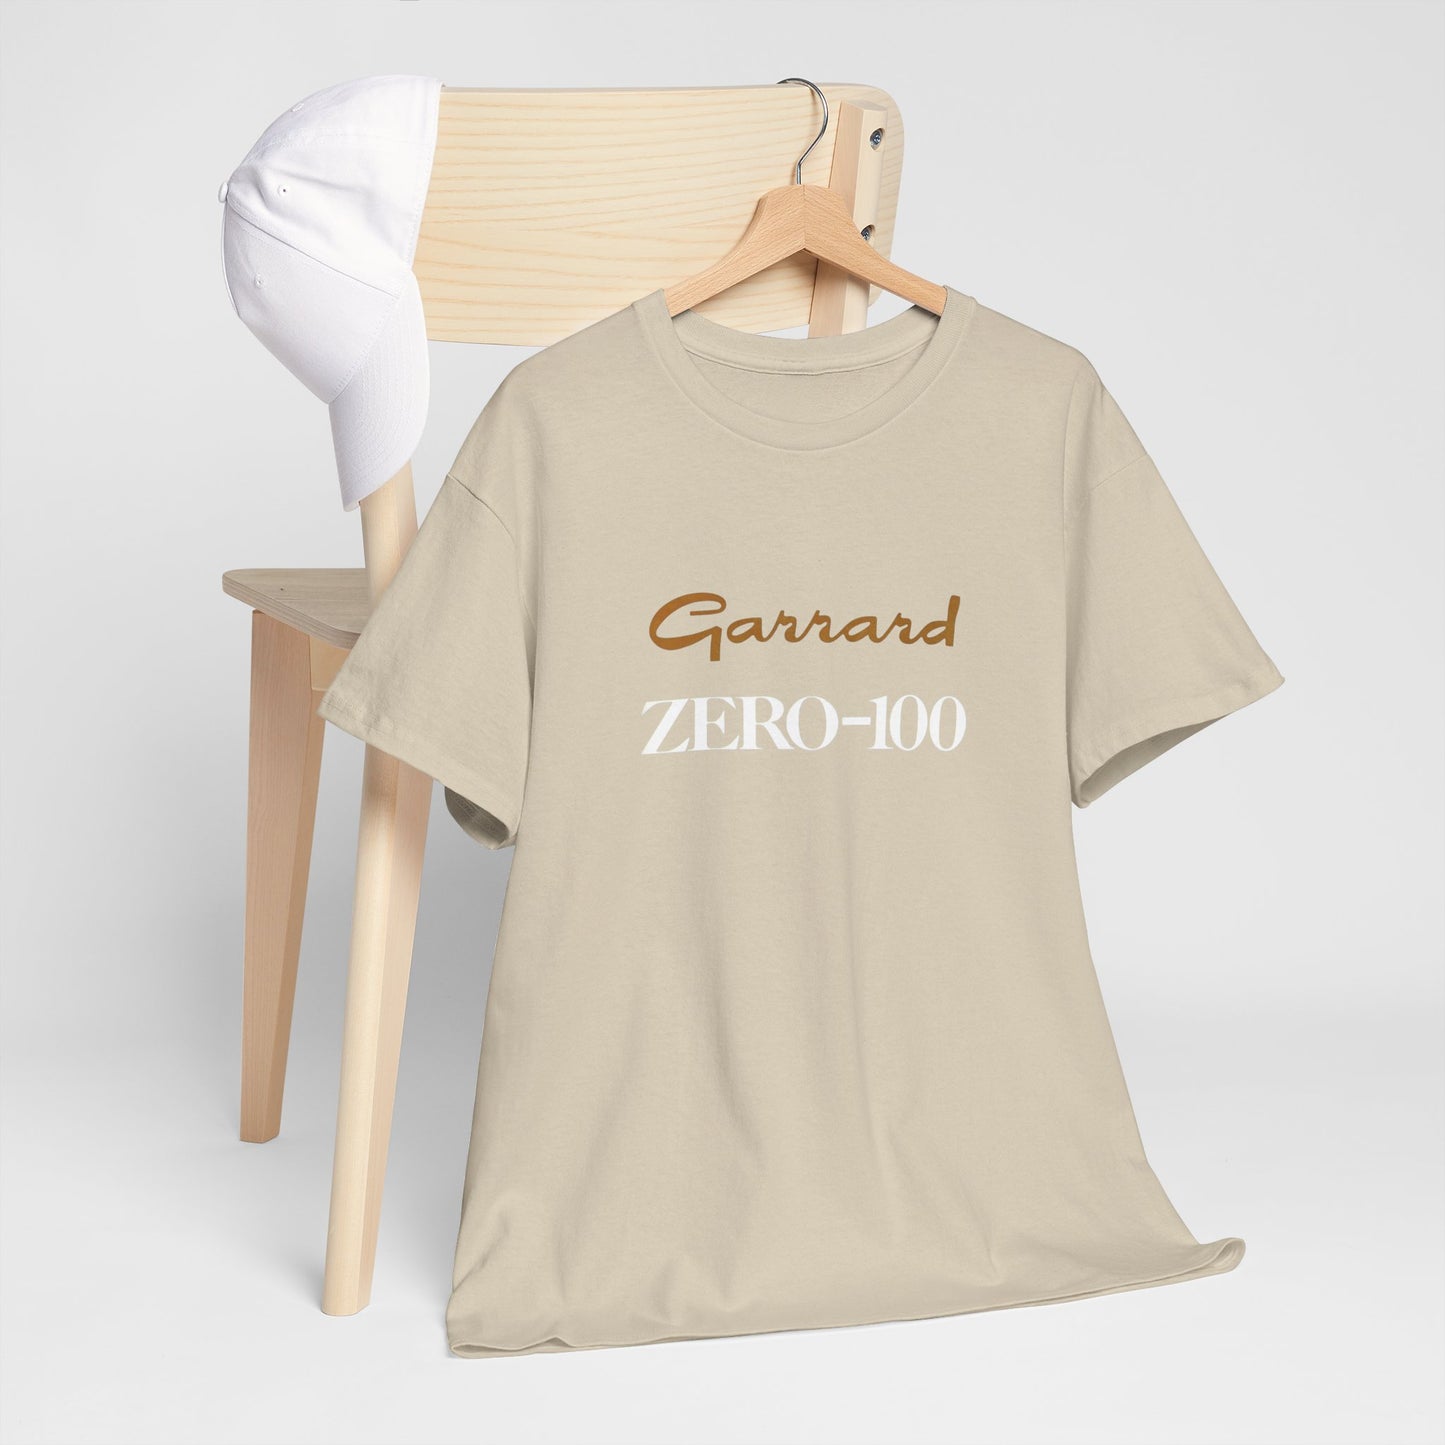 HiFi Tee #122: Garrard Zero 100